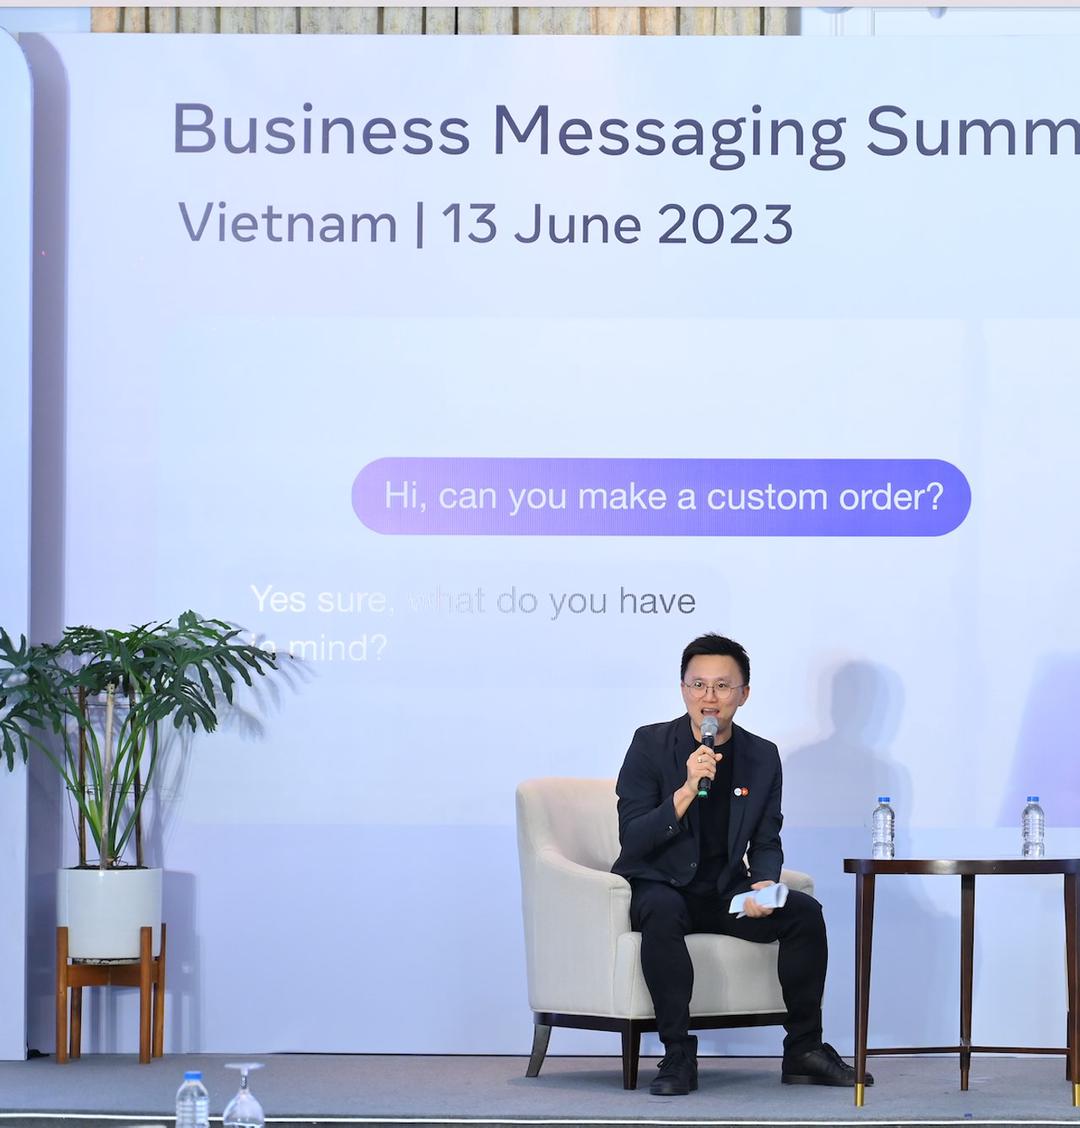 Meta công bố 3 lính vực ưu tiên trong năm 2023 giúp thúc đẩy tăng trường và lợi nhuận cho doanh nghiệp Việt